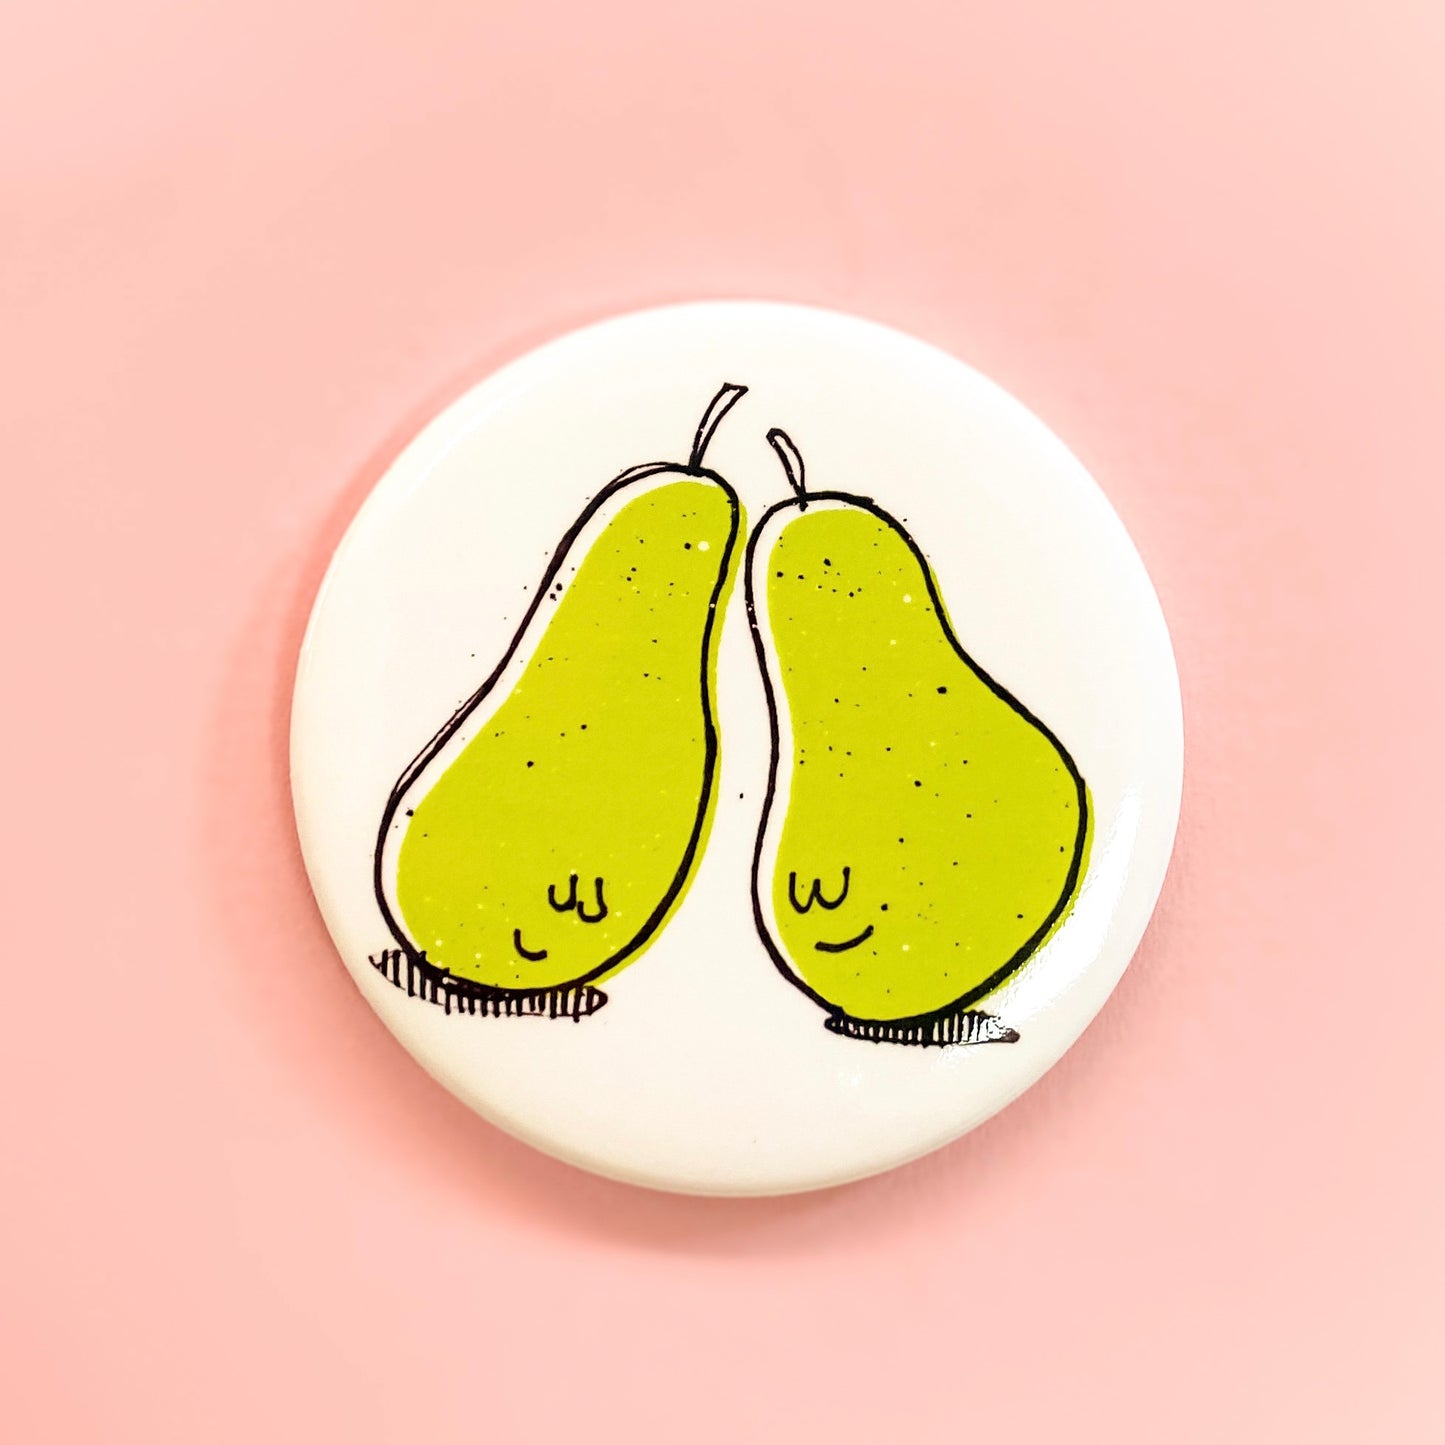 Pair of Pears Magnet